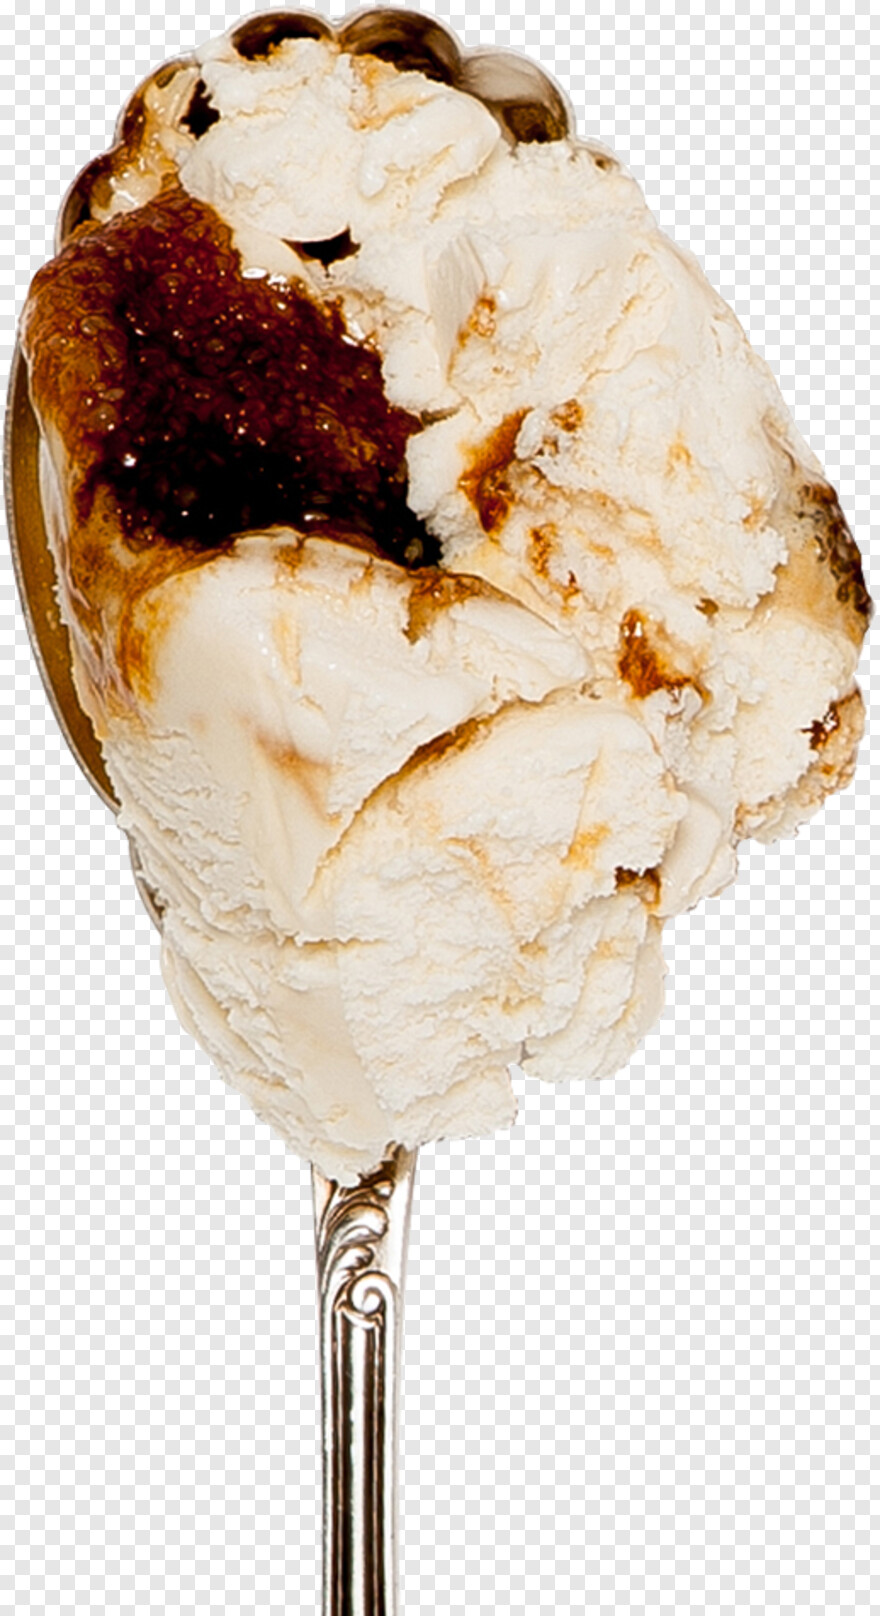 ice-cream-cone # 946640